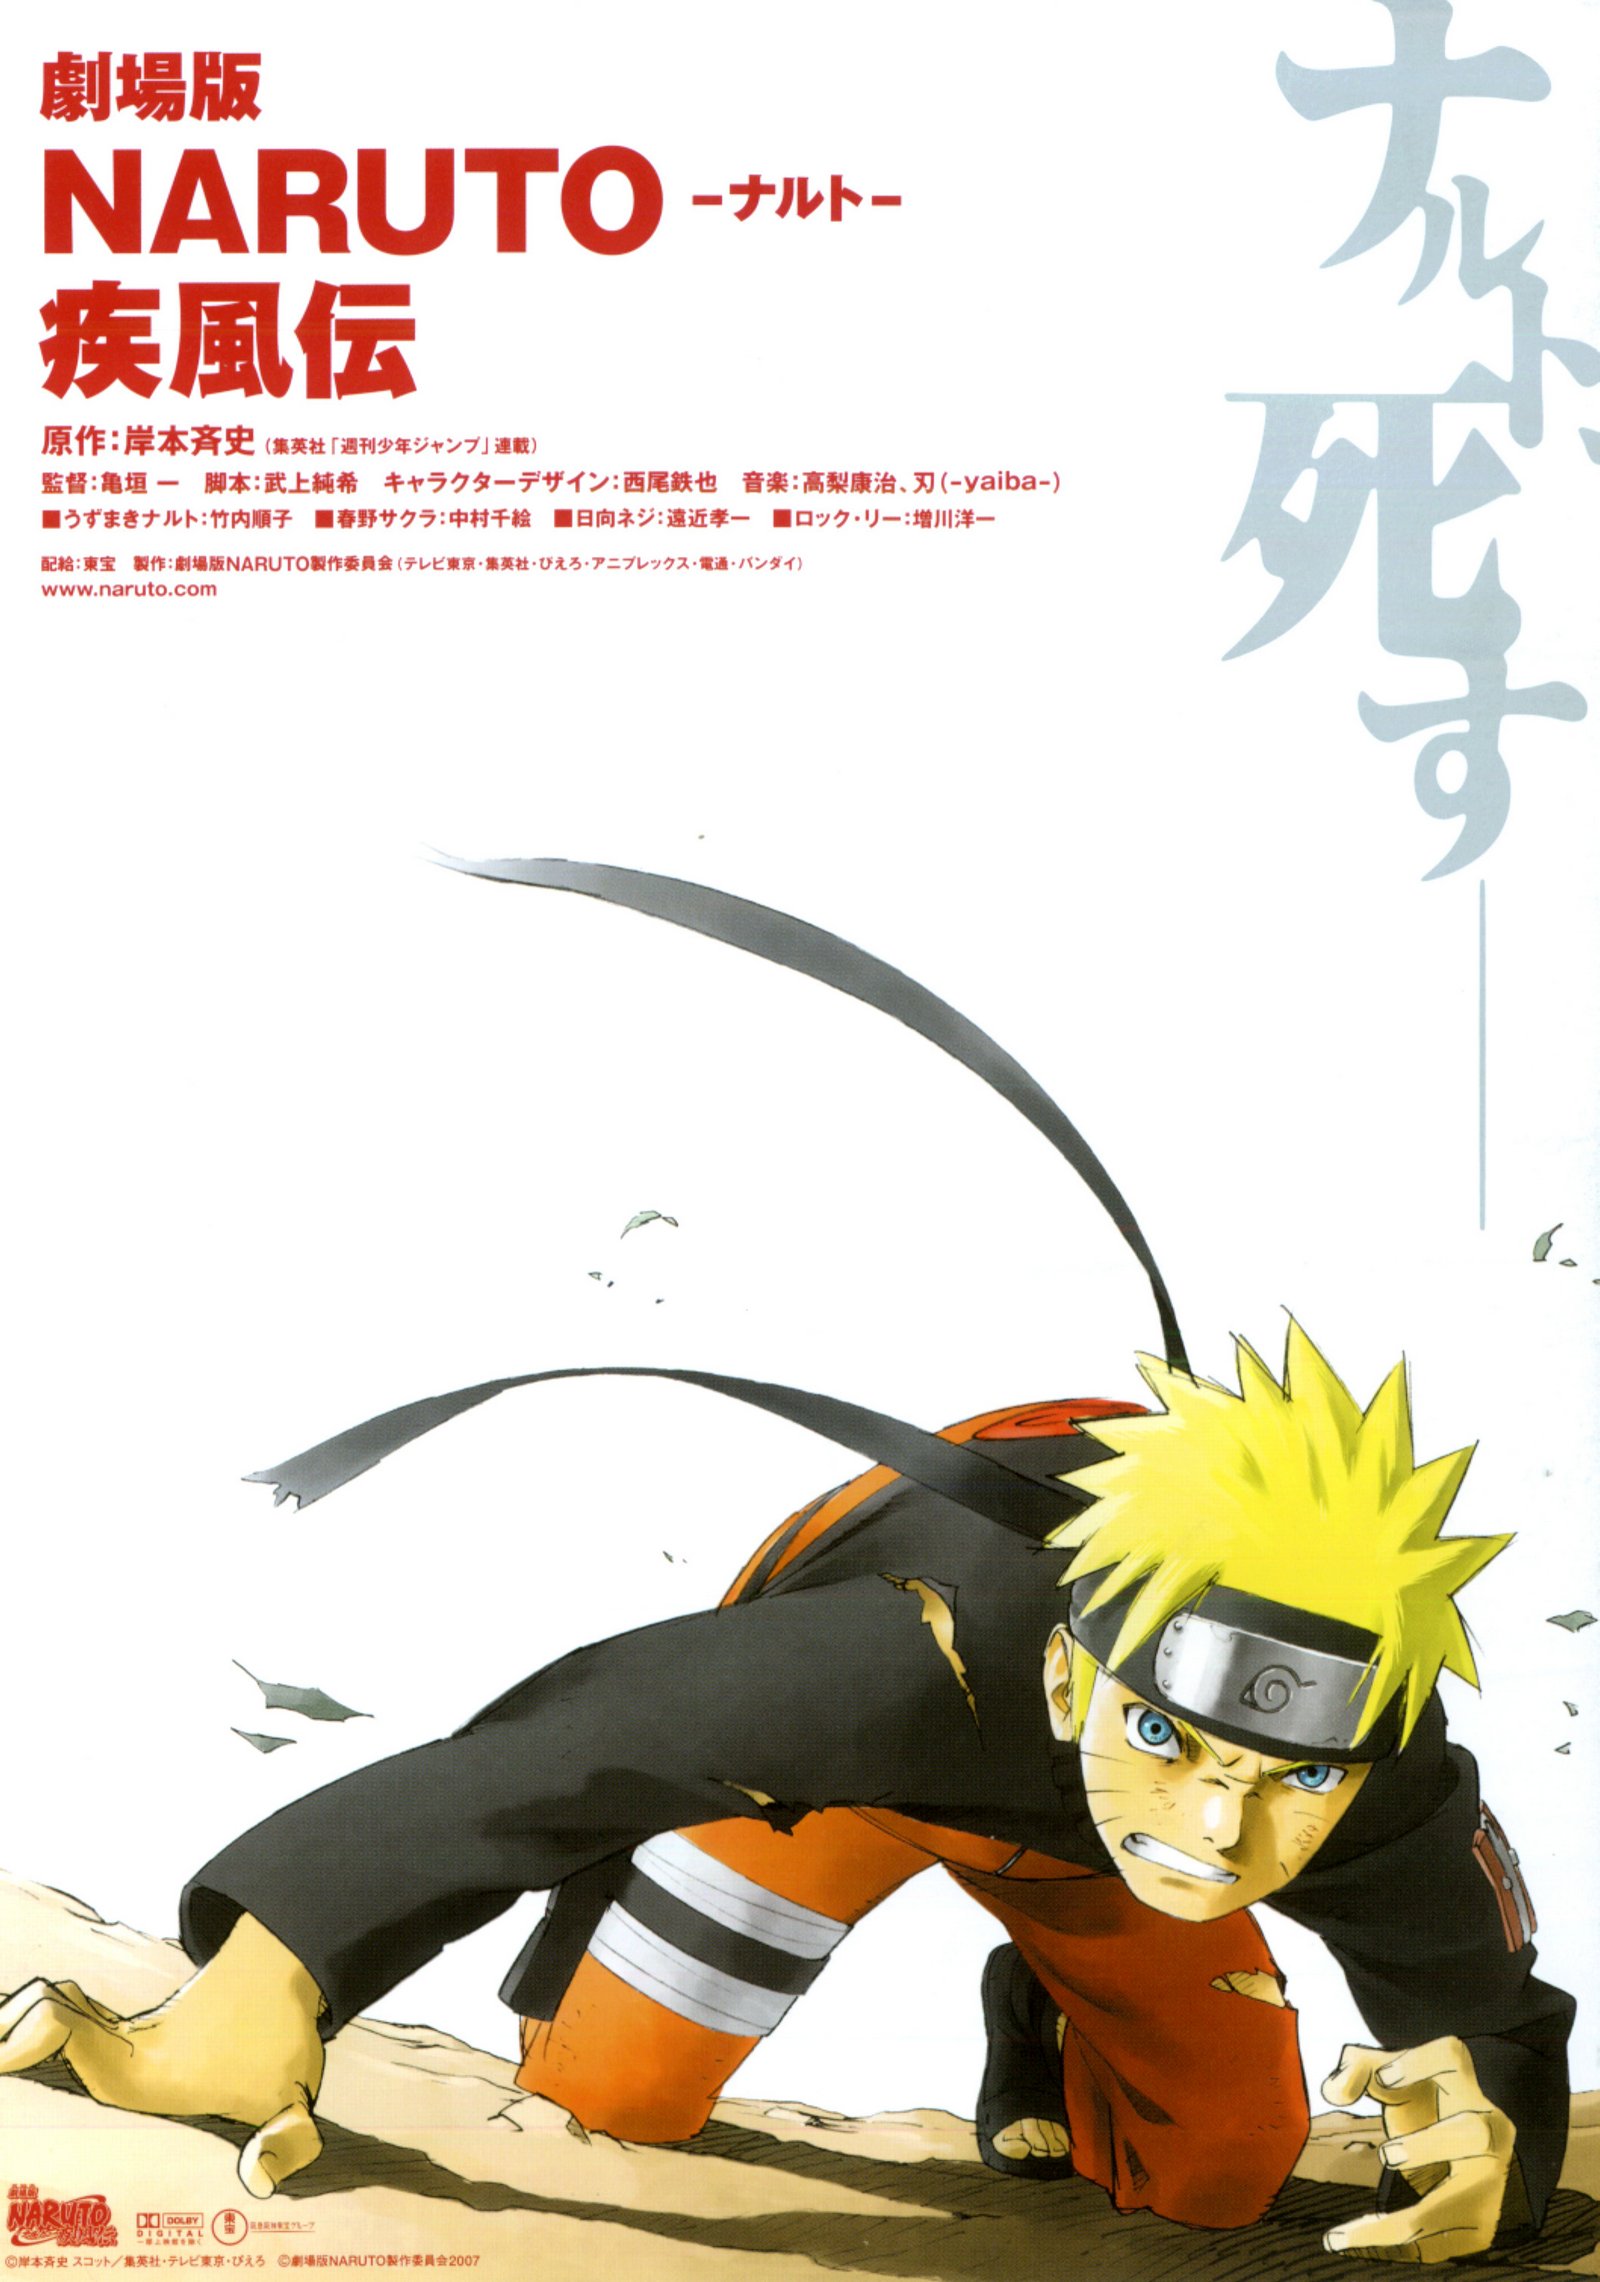 DVD: Confira as artes de Naruto Shippuden